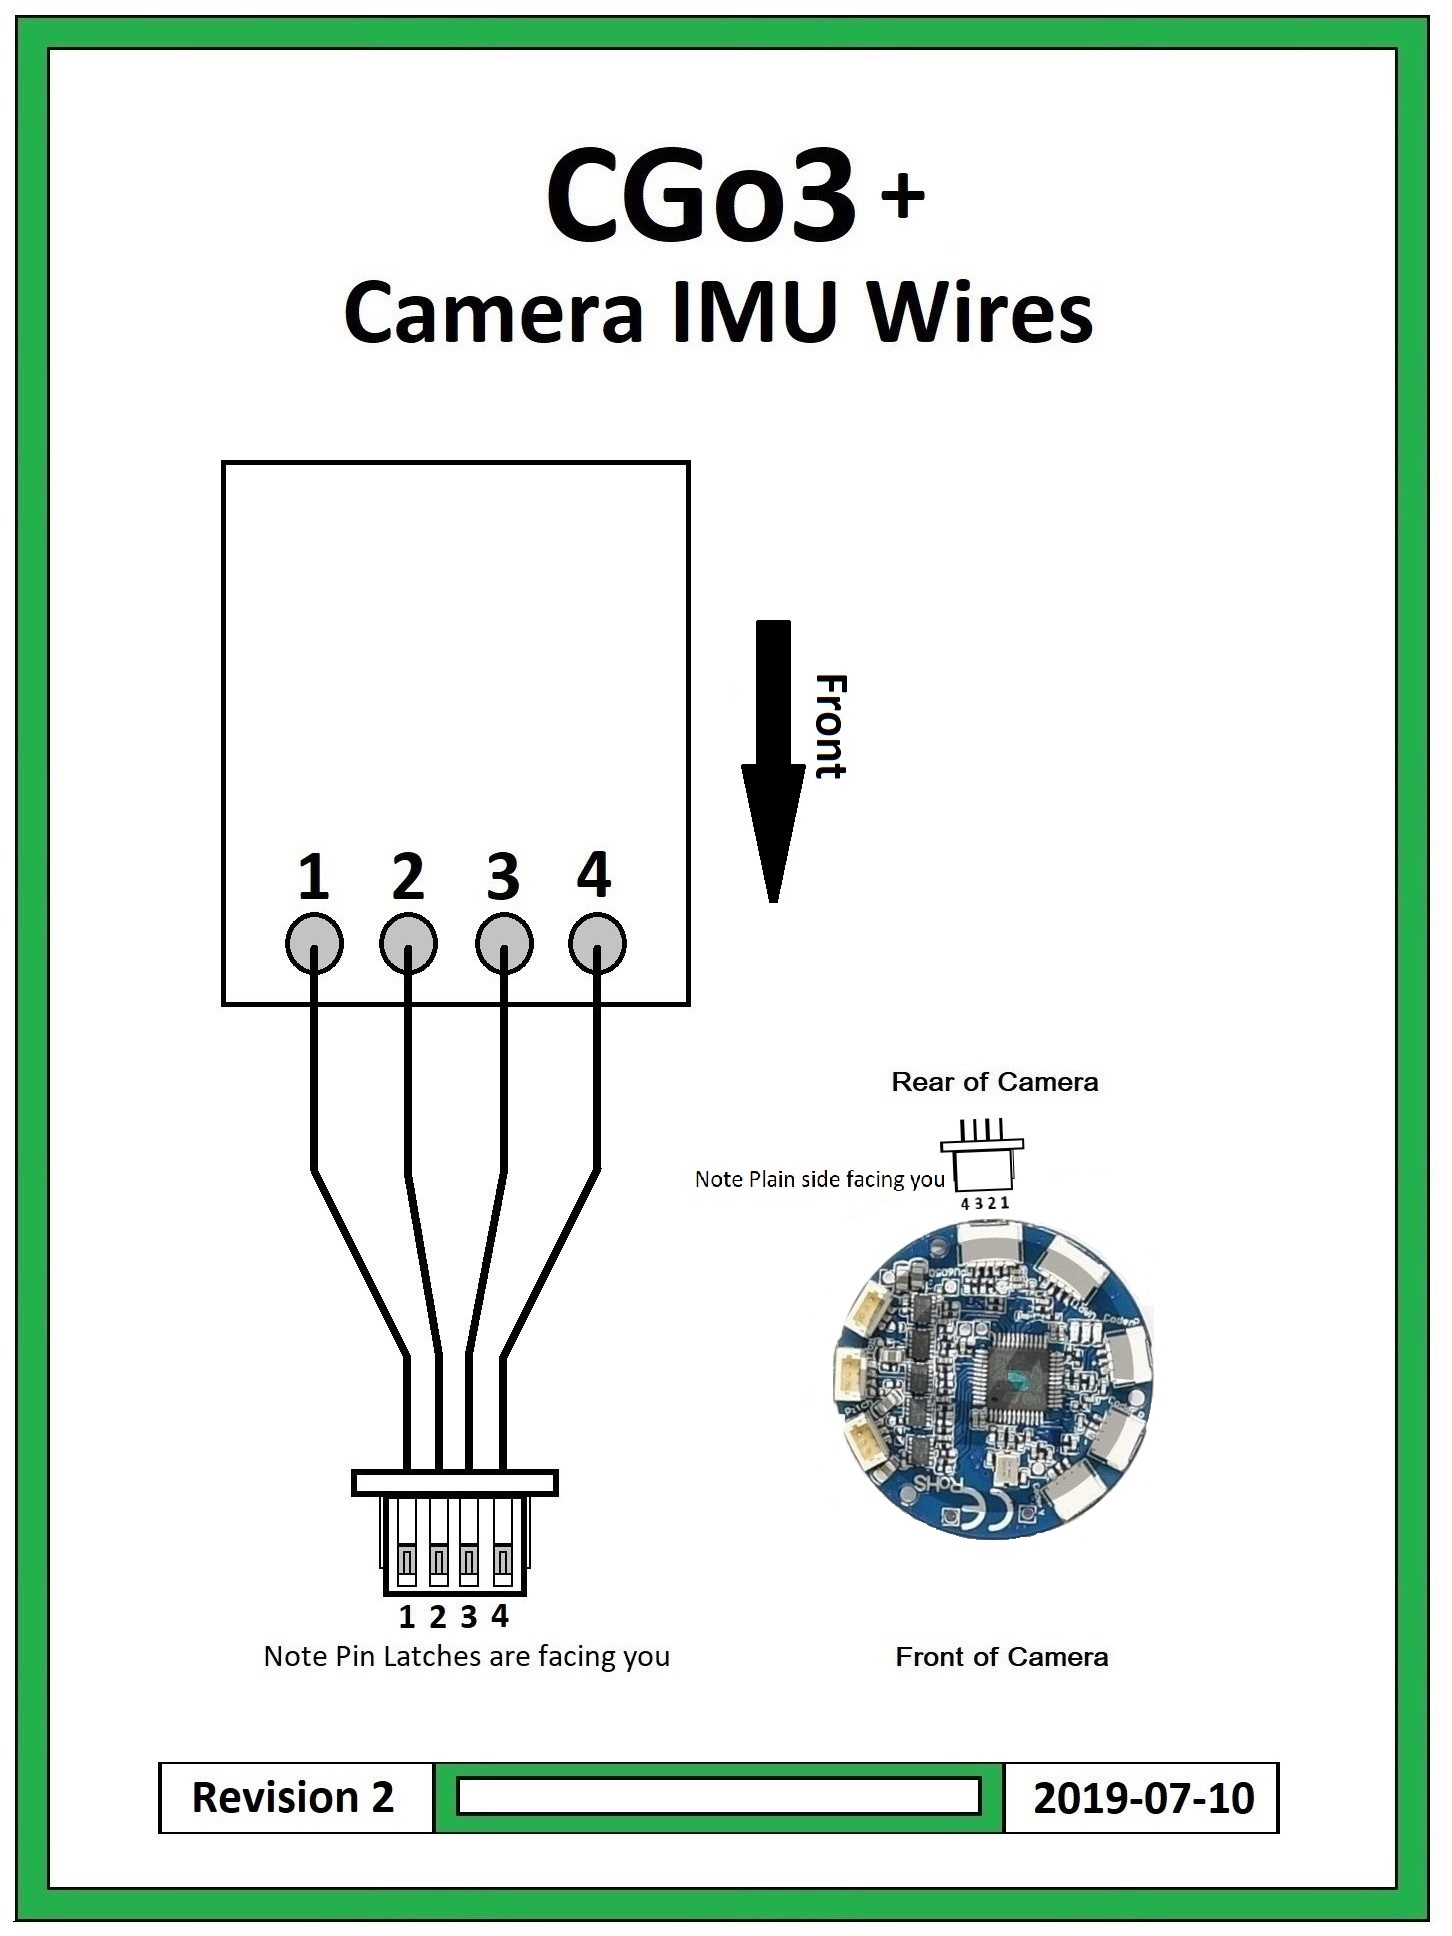 Camera IMU Wires.jpg